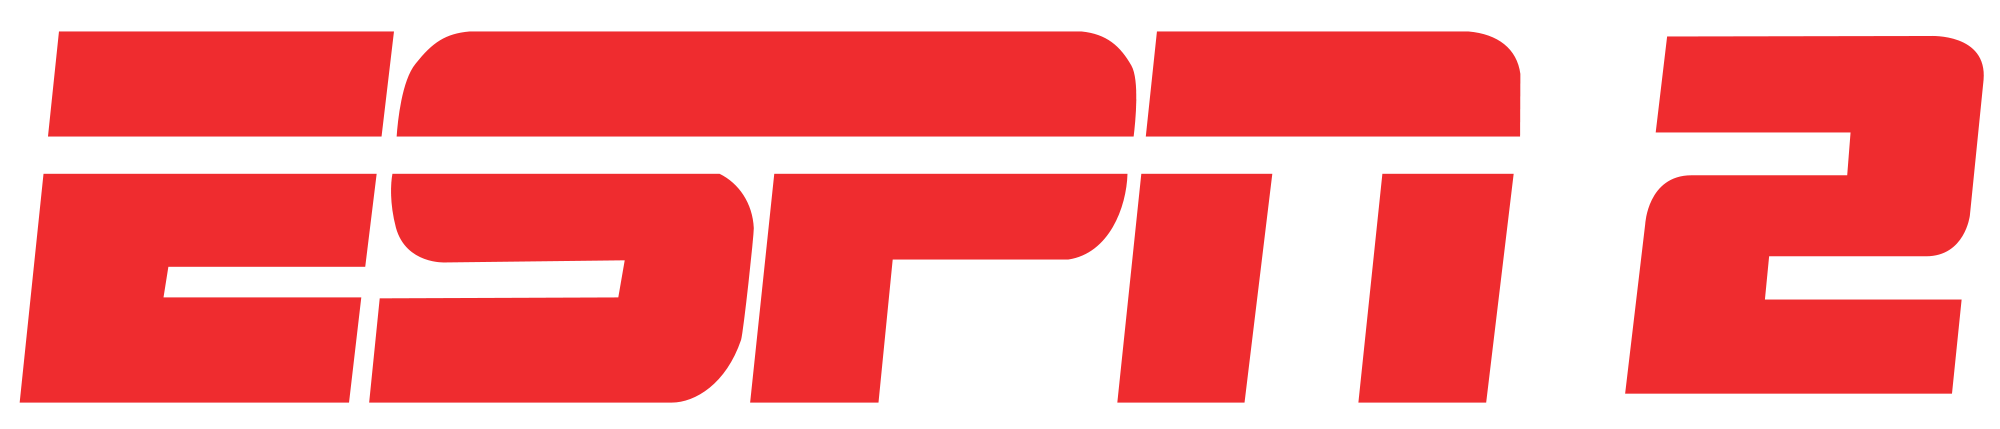 Image - 2000px-ESPN2 logo.png | Disney Wiki | Fandom powered by Wikia